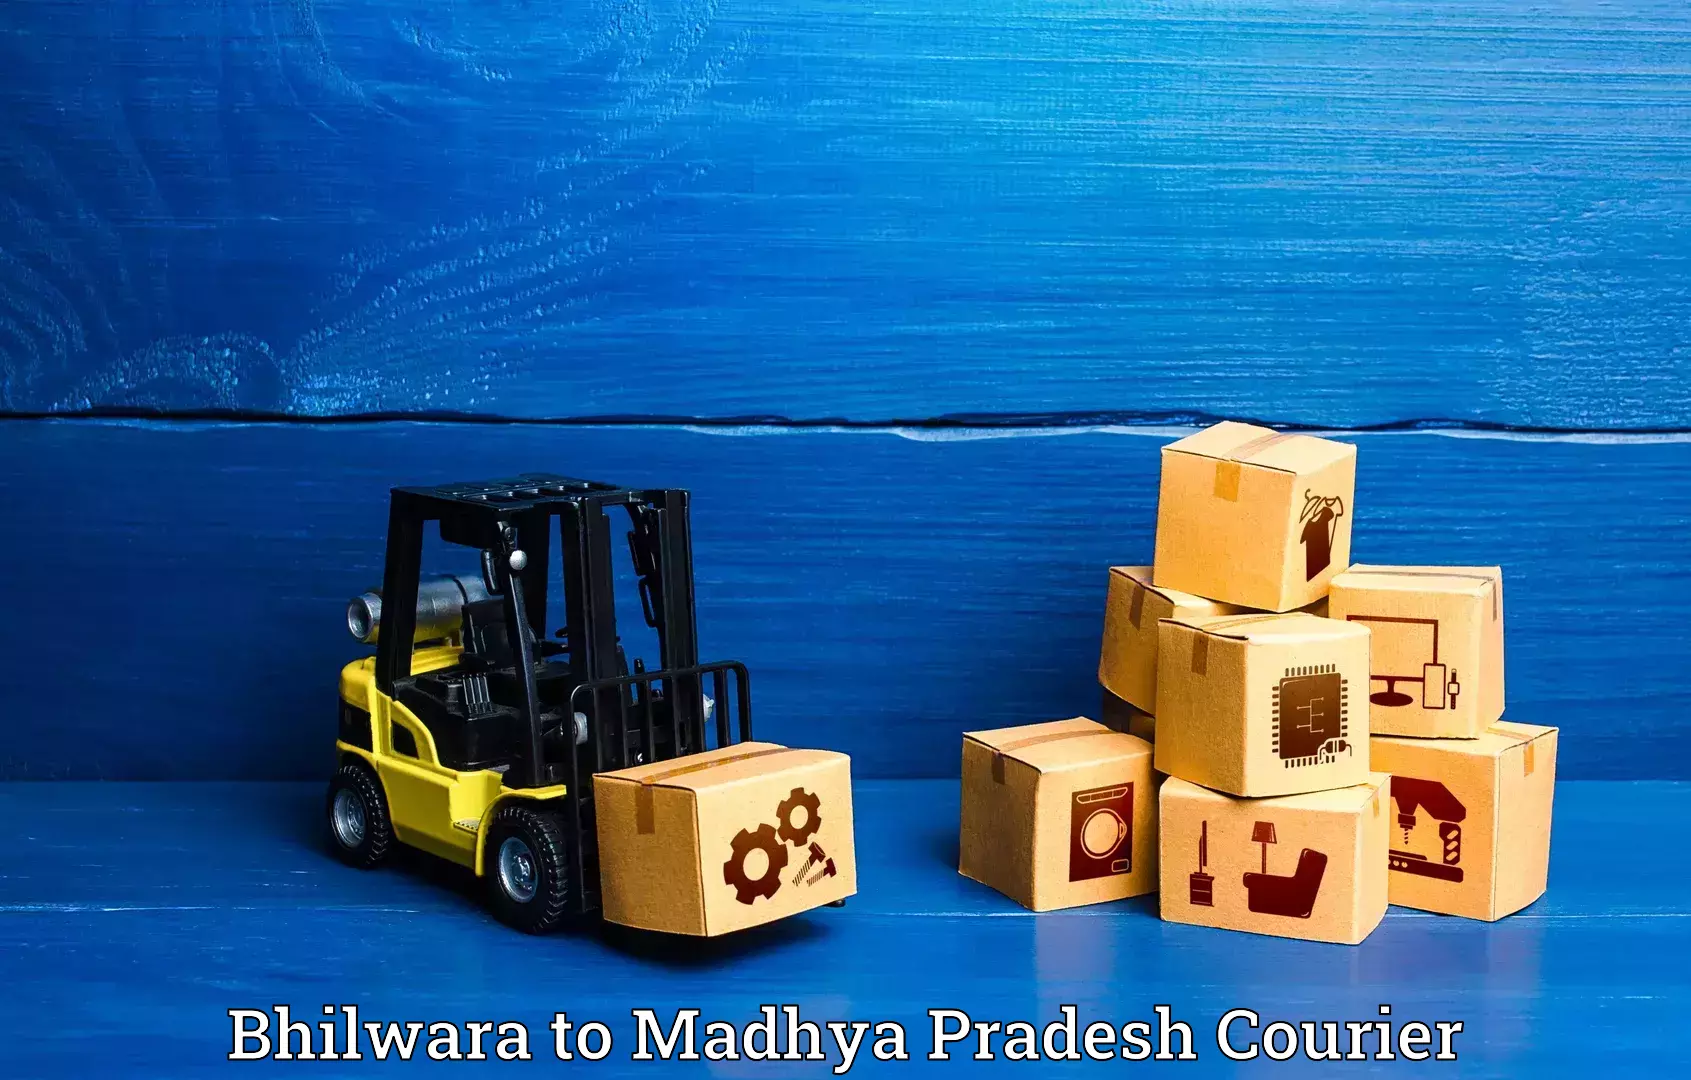 Urgent luggage shipment Bhilwara to Udaipura